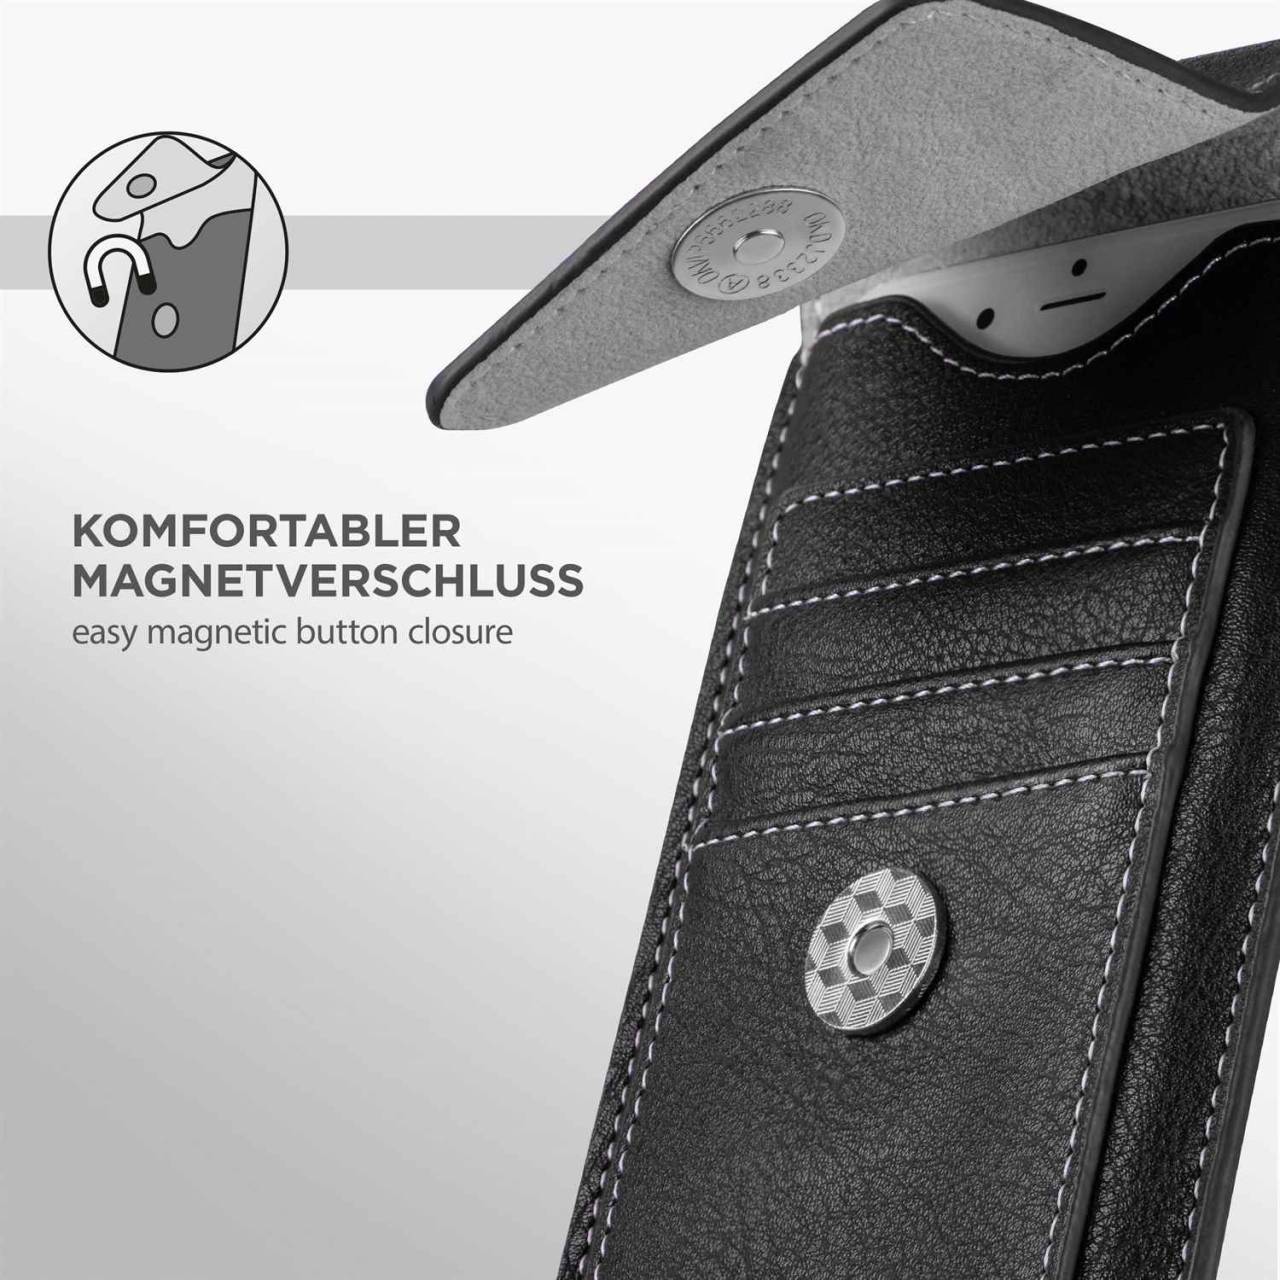 ONEFLOW Zeal Case für BlackBerry KEYone – Handy Gürteltasche aus PU Leder mit Kartenfächern